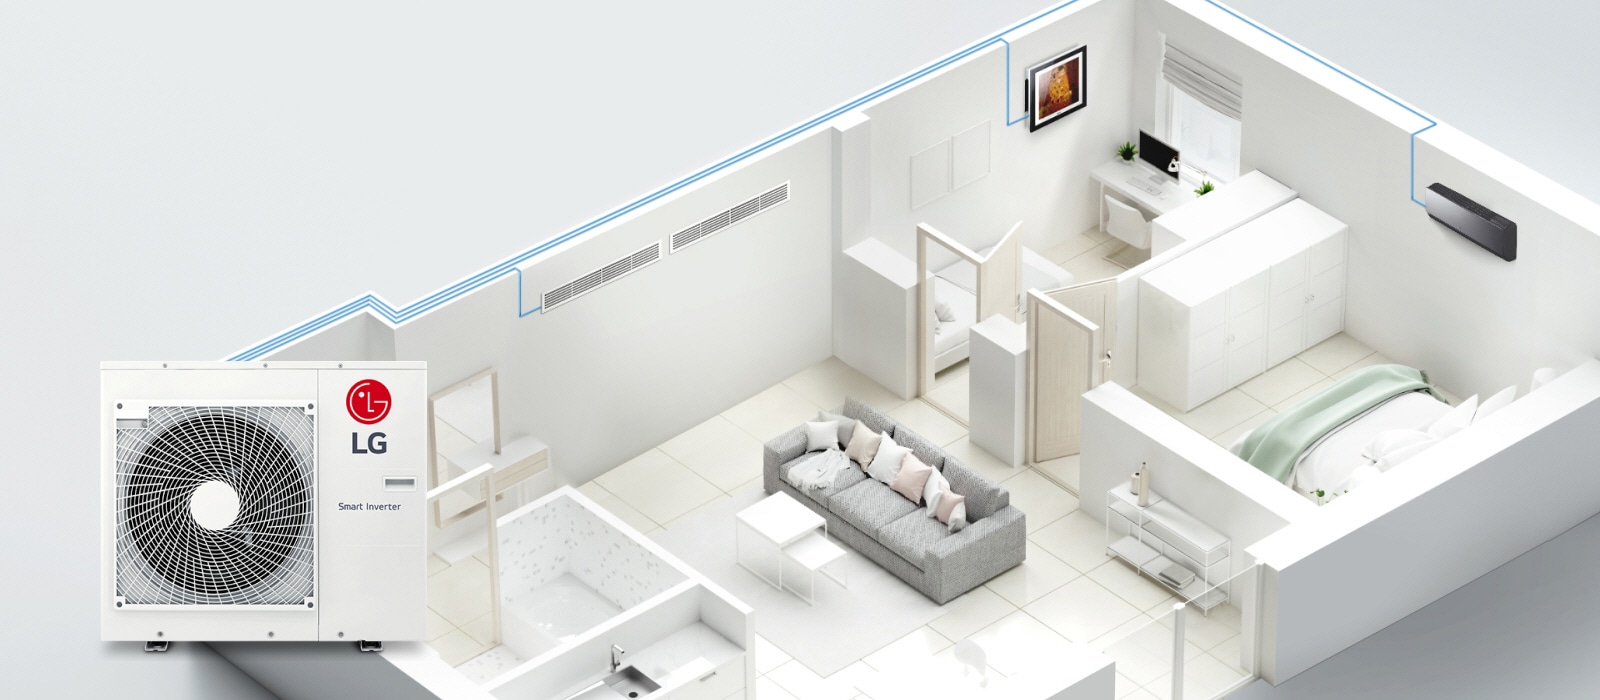 Una vista en sección de la casa muestra las tuberías azules de una unidad Smart Inverter de LG que serpentean por la casa, conectando tres unidades interiores en cada habitación.